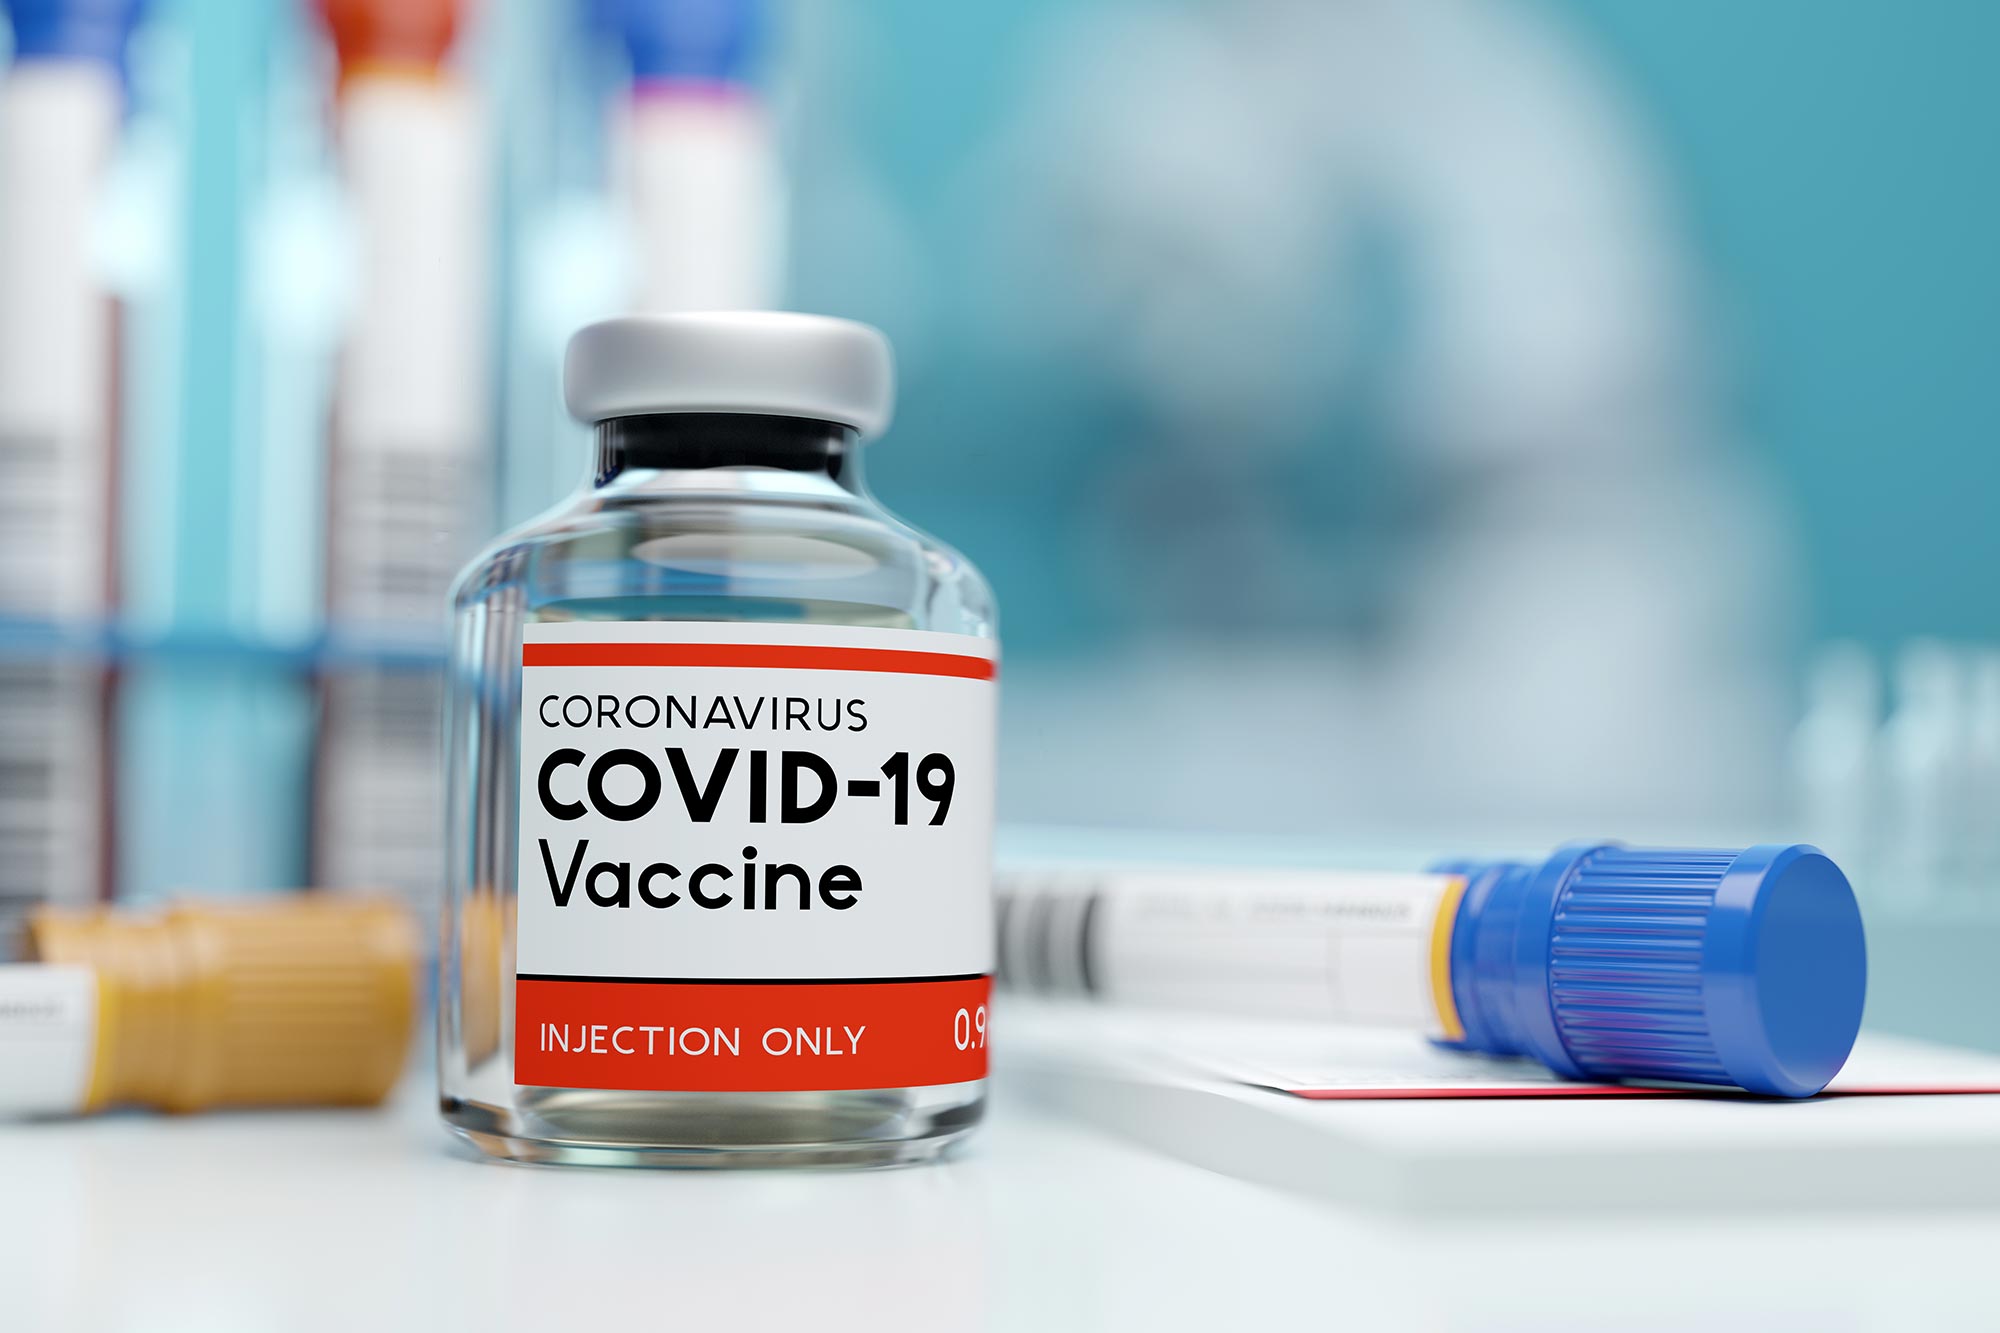 तीसरे चरण के पहले दिन कोरोना वैक्‍सीन को लेकर लोगों में दिखा उत्‍साह, एक ही दिन में 36 लाख से ज्यादा टीककरण